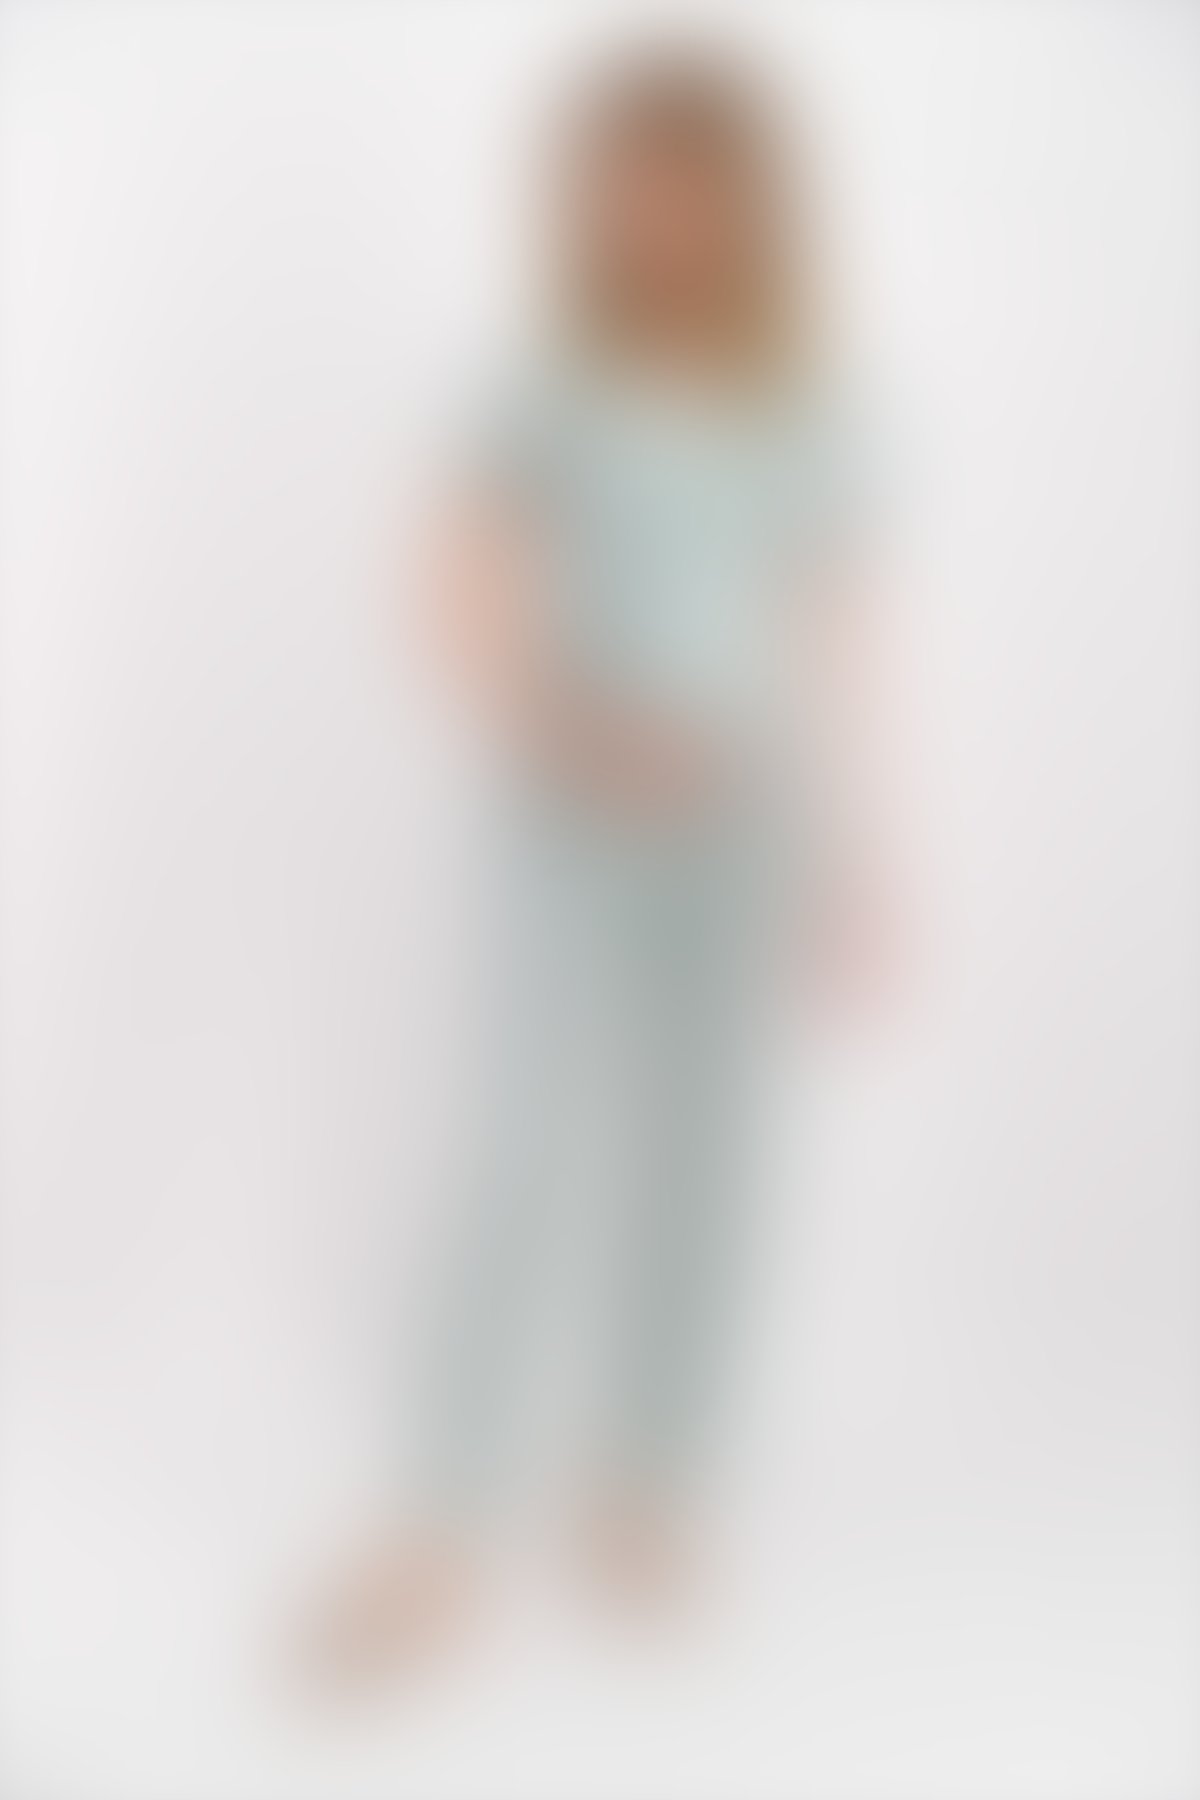 Pierre Cardin - Pierre Cardin Spotted Mint Yeşili Kadın Lohusa Pijama Takımı